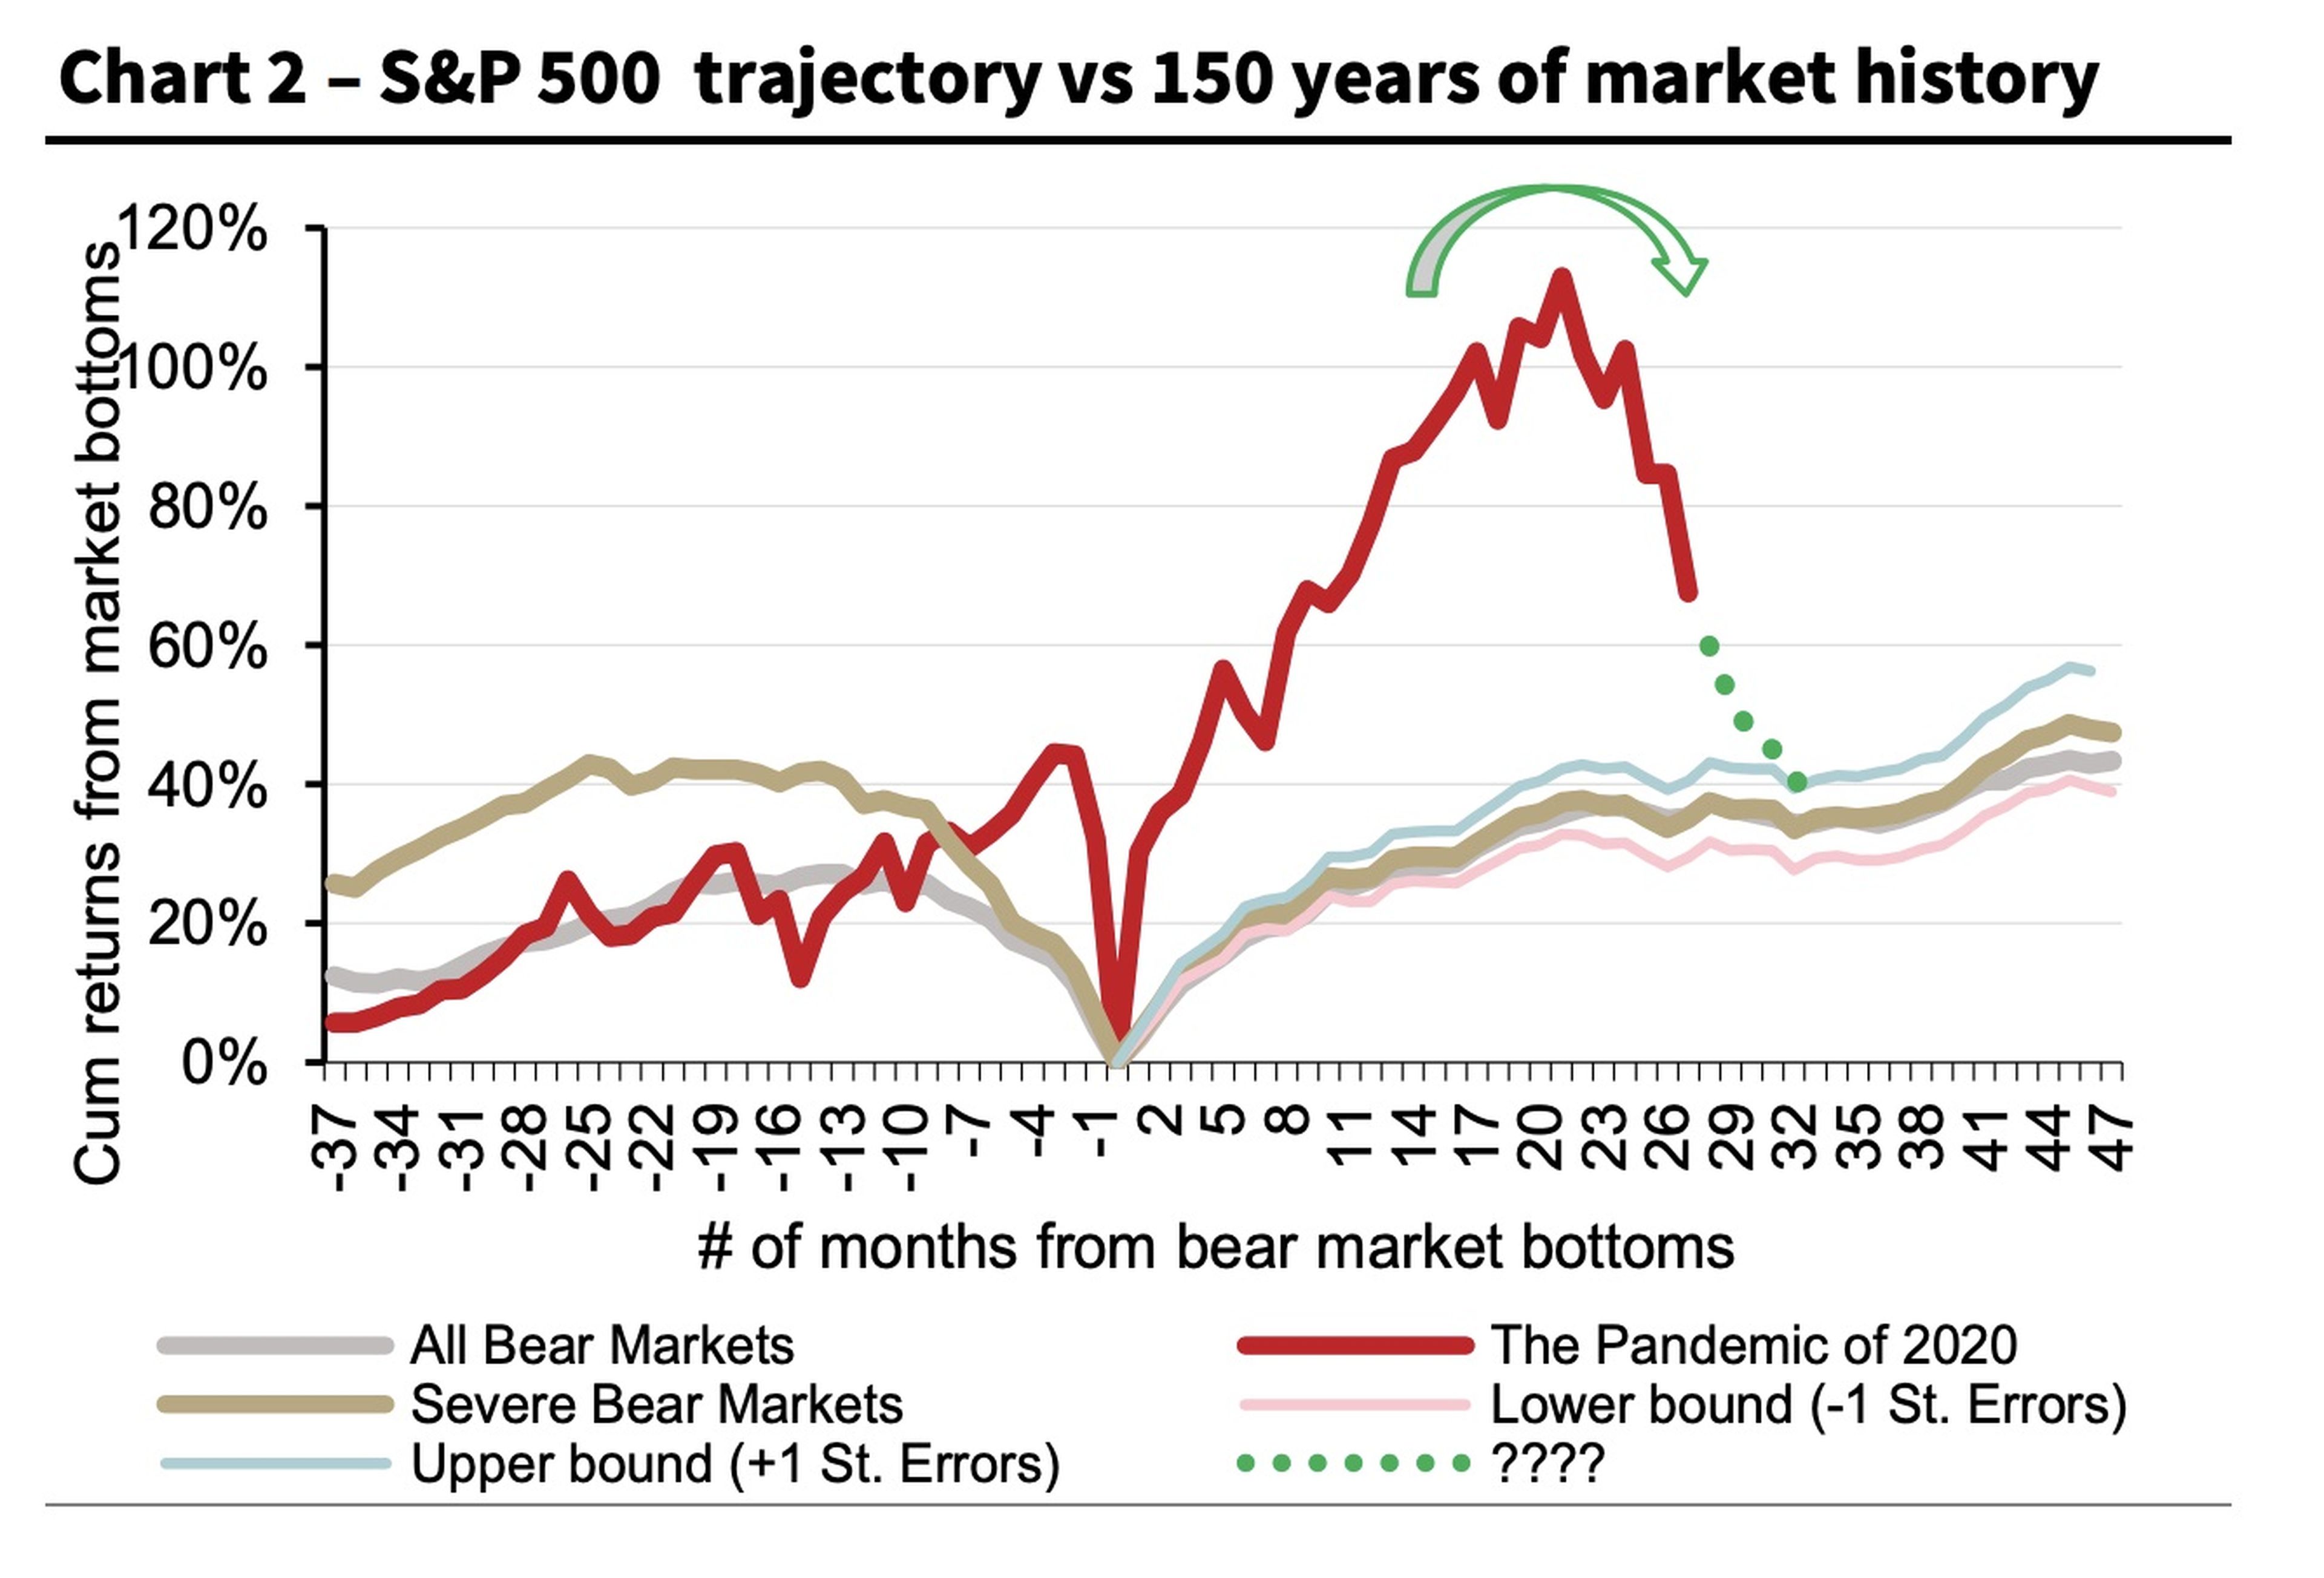 Trayectoria del S&P 500 frente a 150 años de historia del mercado.